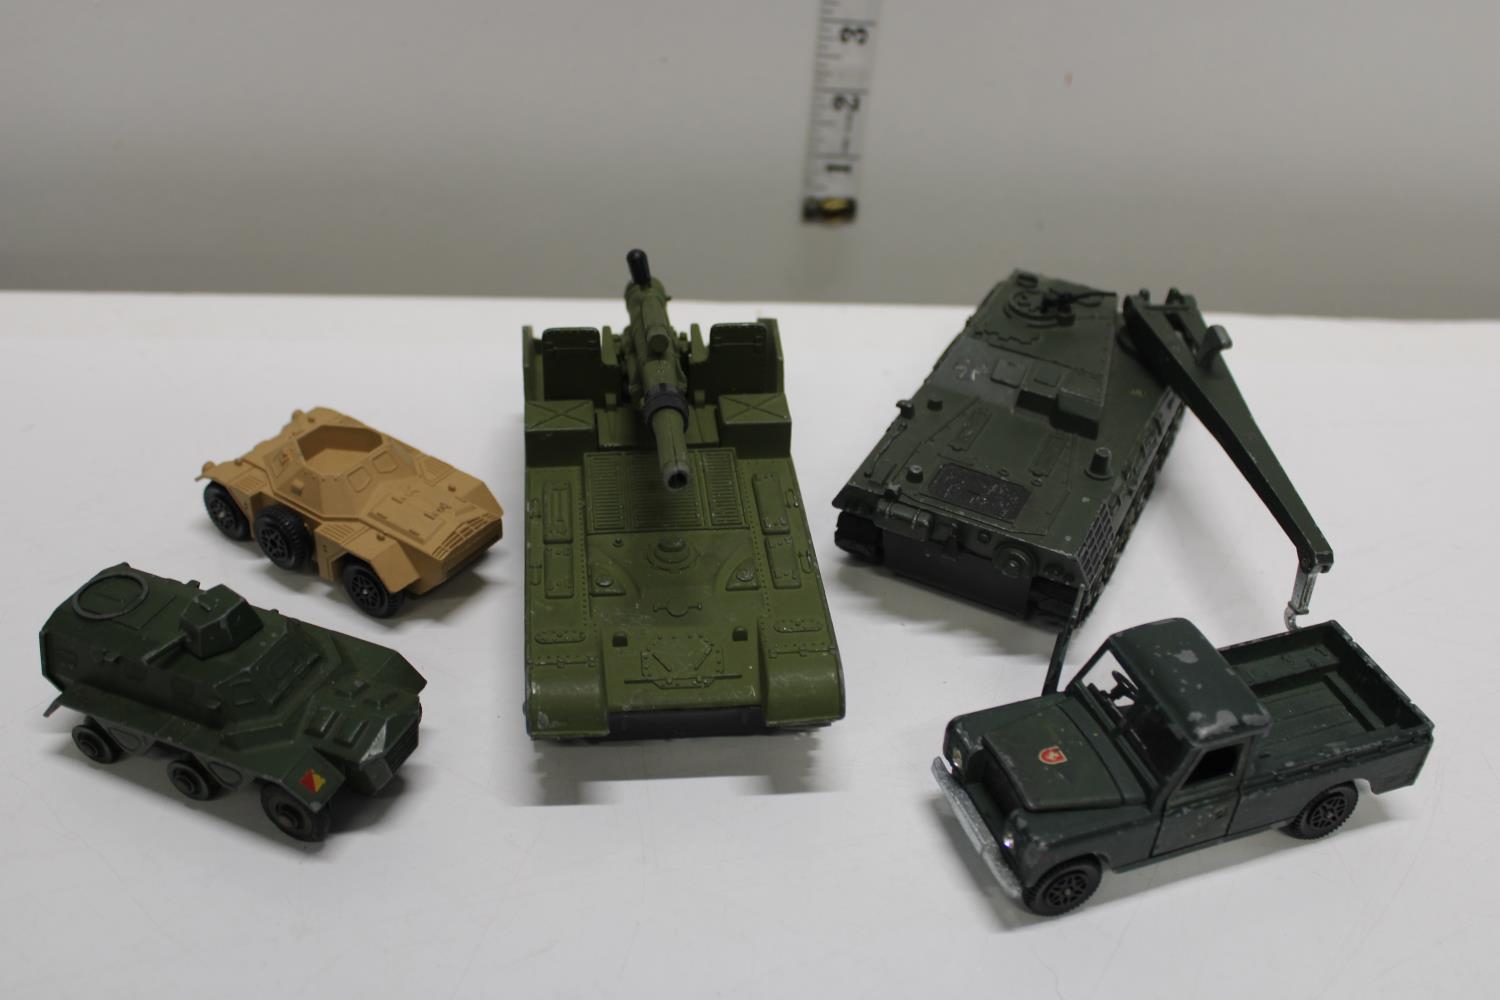 Five Dinky die-cast military models